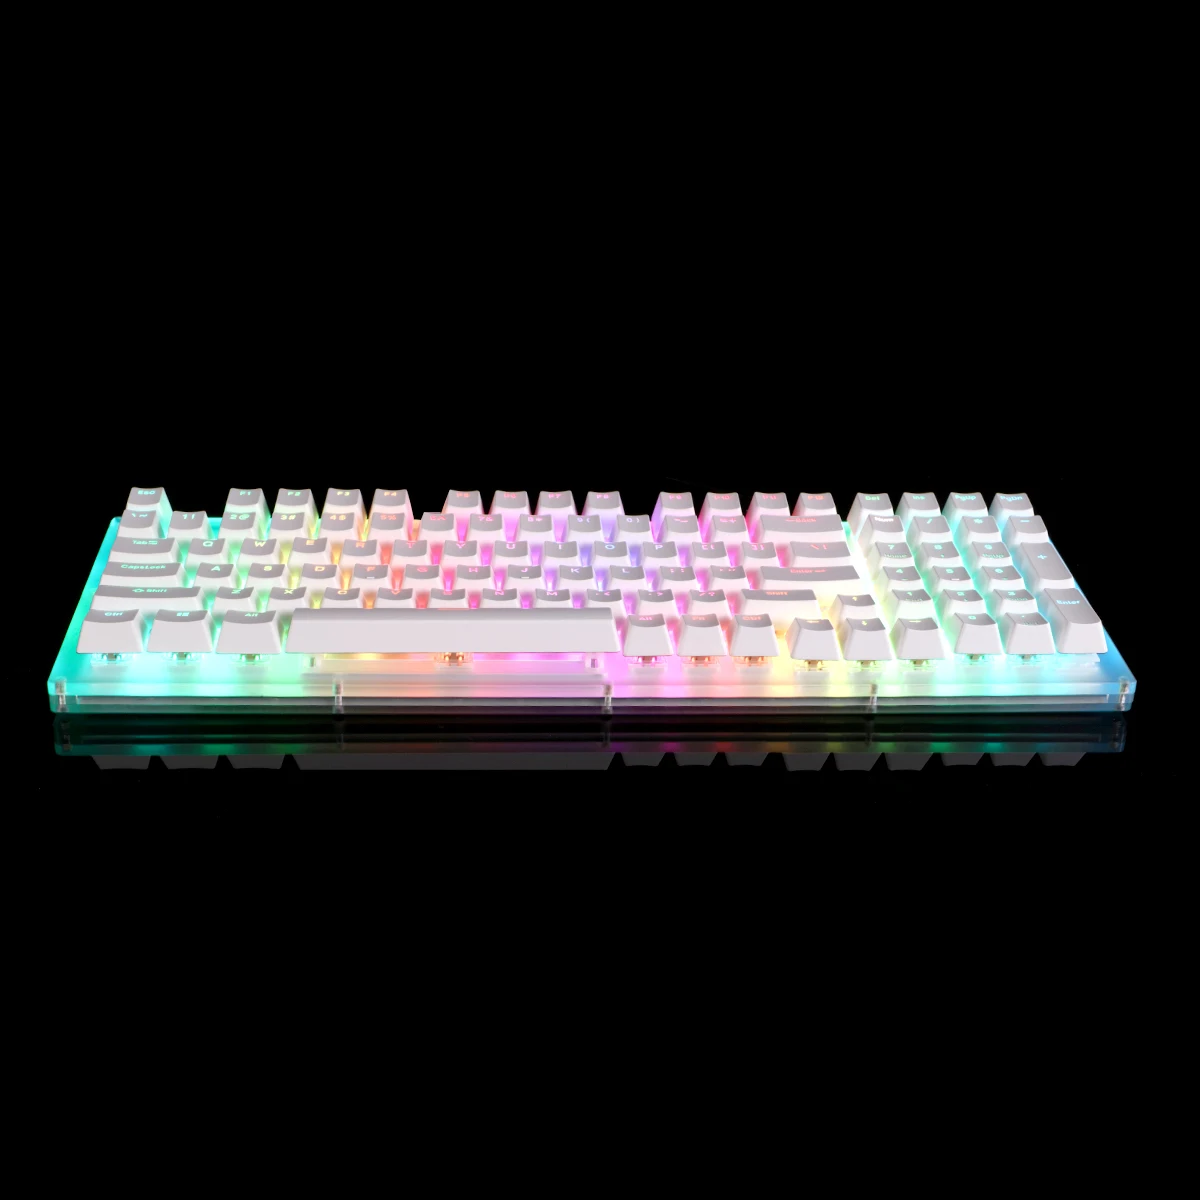 FEKER Glaze98 Mechanical Gaming Keyboard Hotswap DIY kit E ABS luz de fundo Keycaps Conjunto de verniz Acrílico Caso E 4pcs Opções de Presente